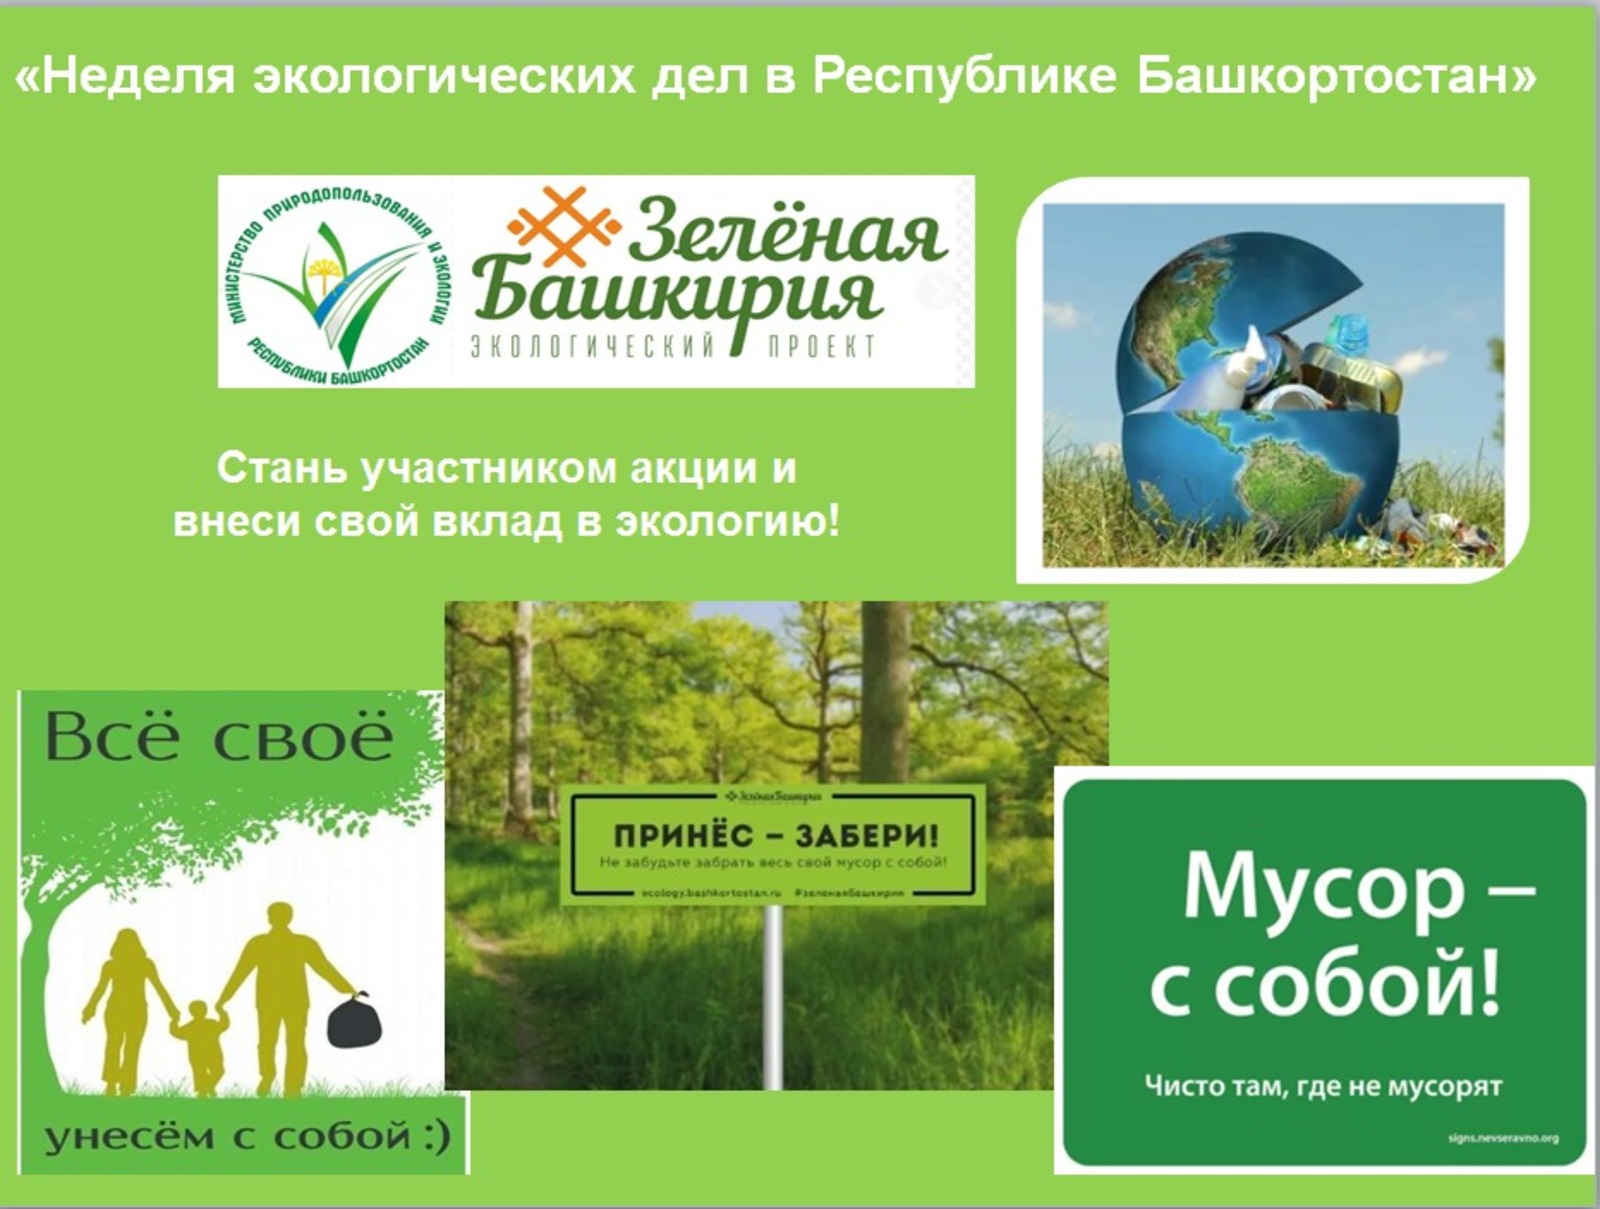 В Башкортостане начинается Неделя экологических дел